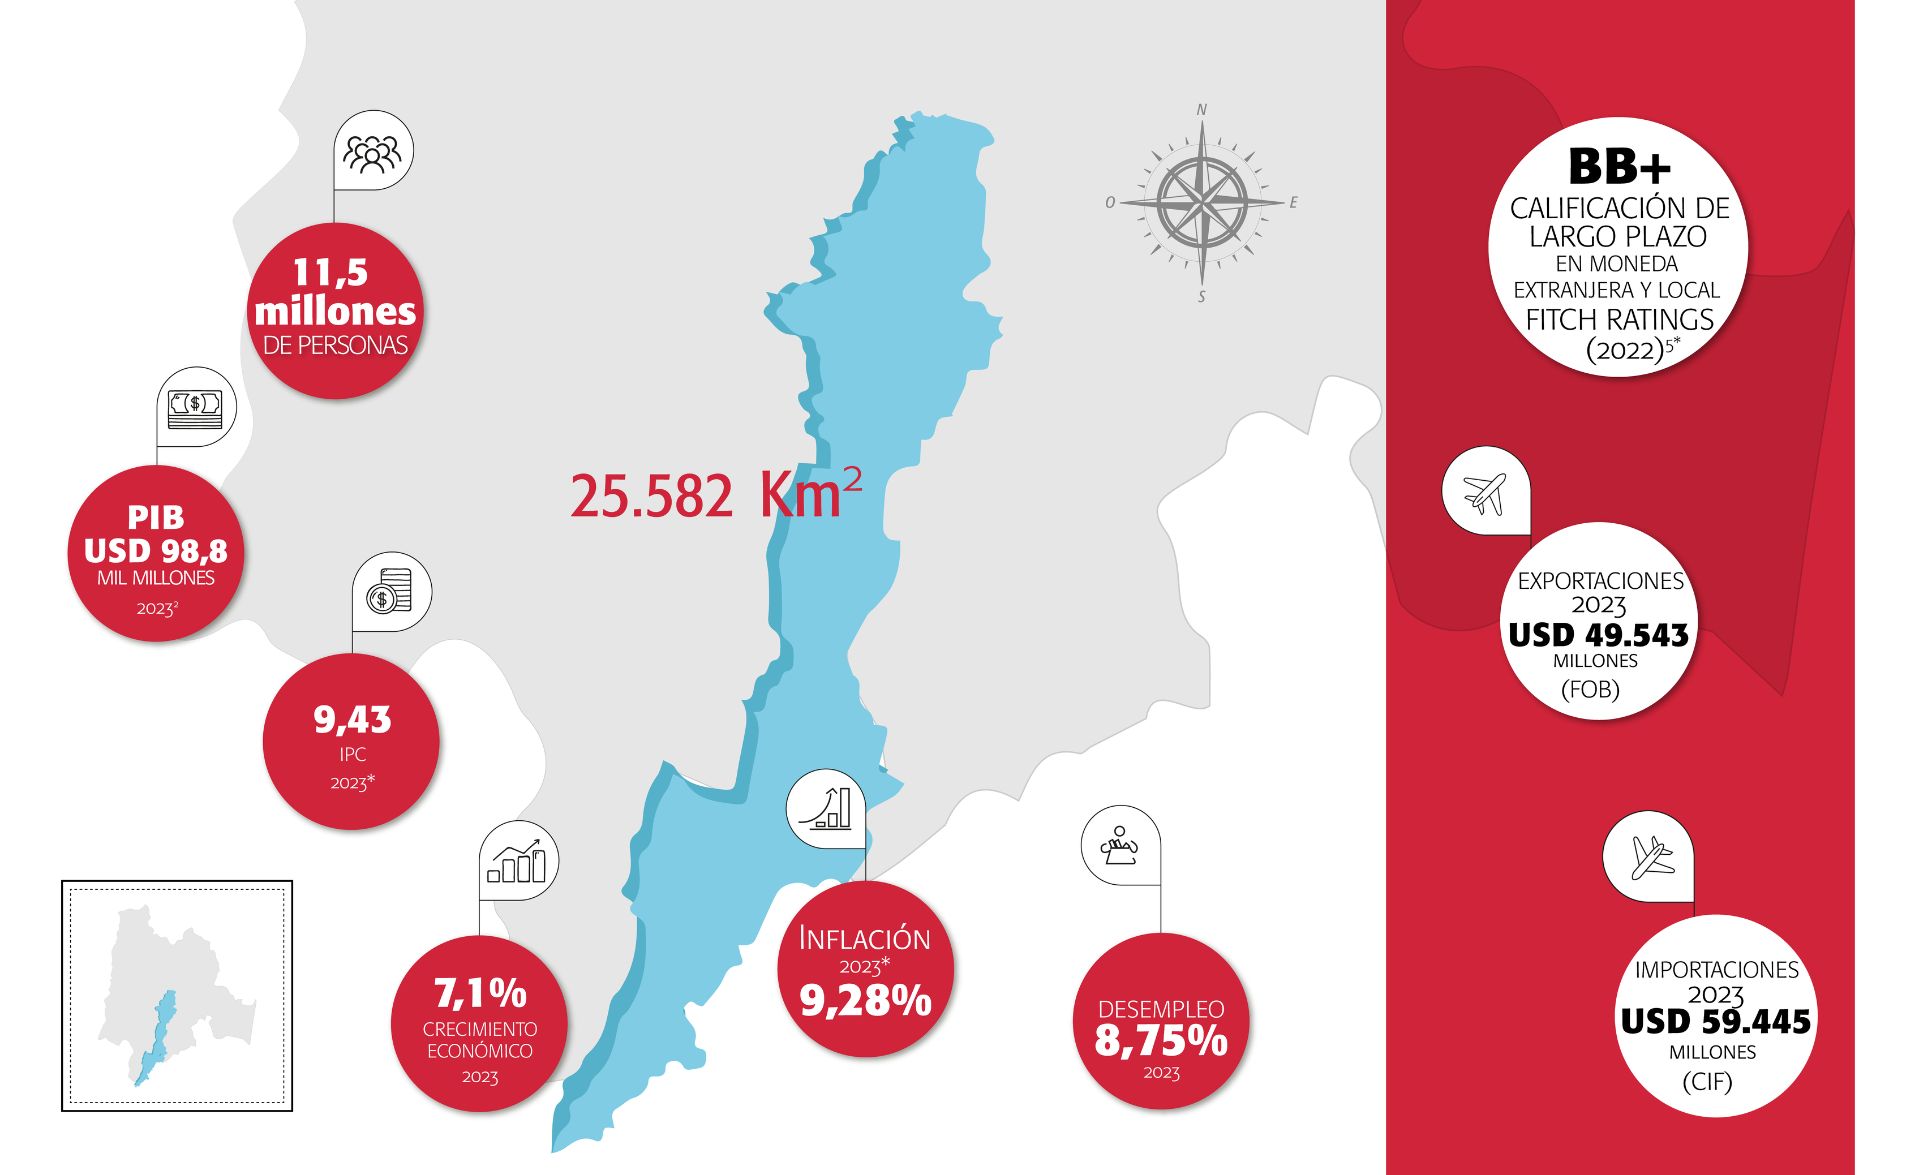 Datos generales y cifras de Bogotá Región